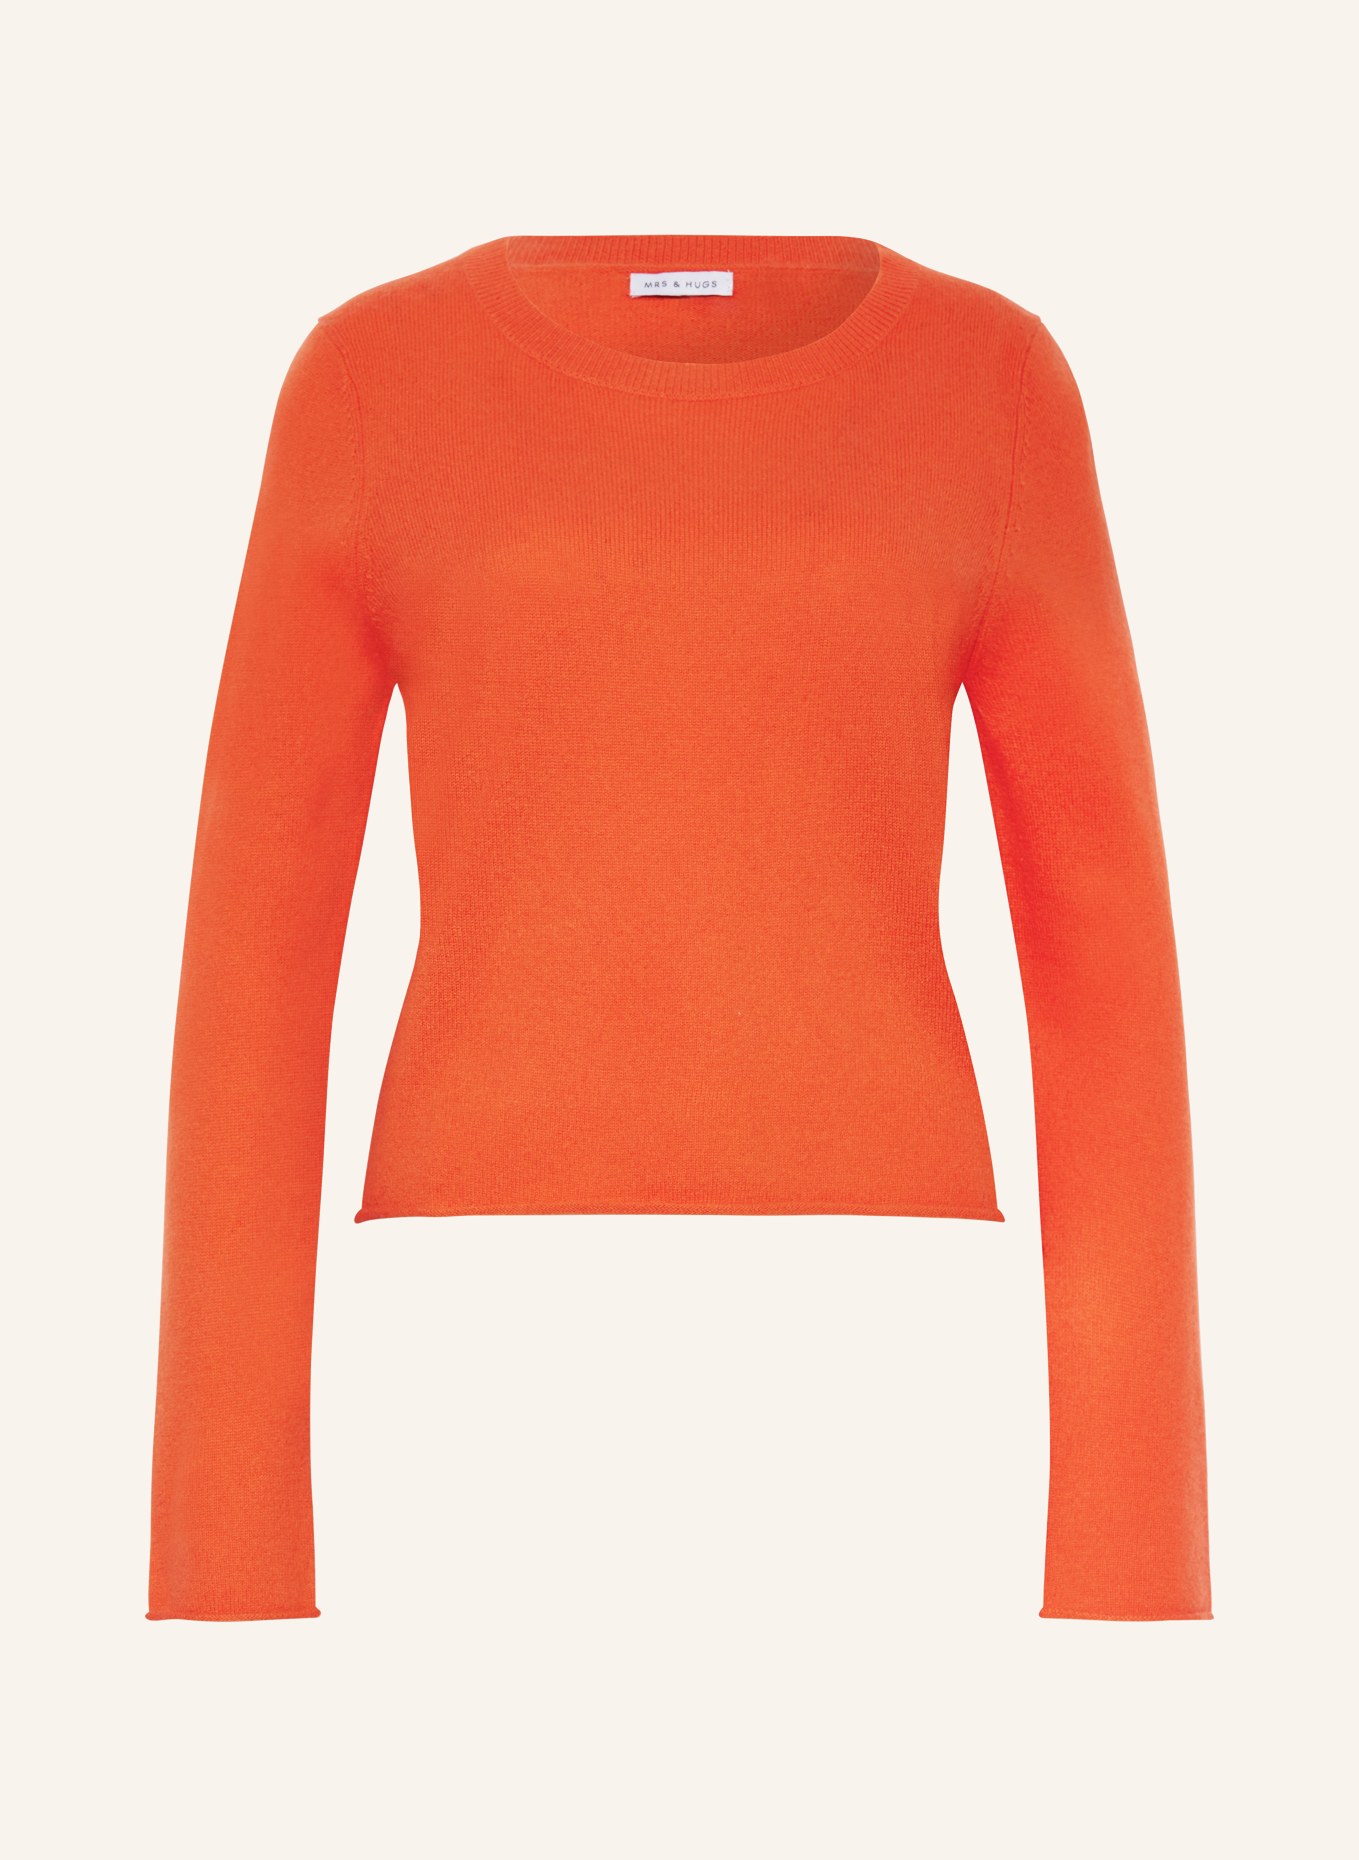 MRS & HUGS Cashmere-Pullover, Farbe: ORANGE (Bild 1)